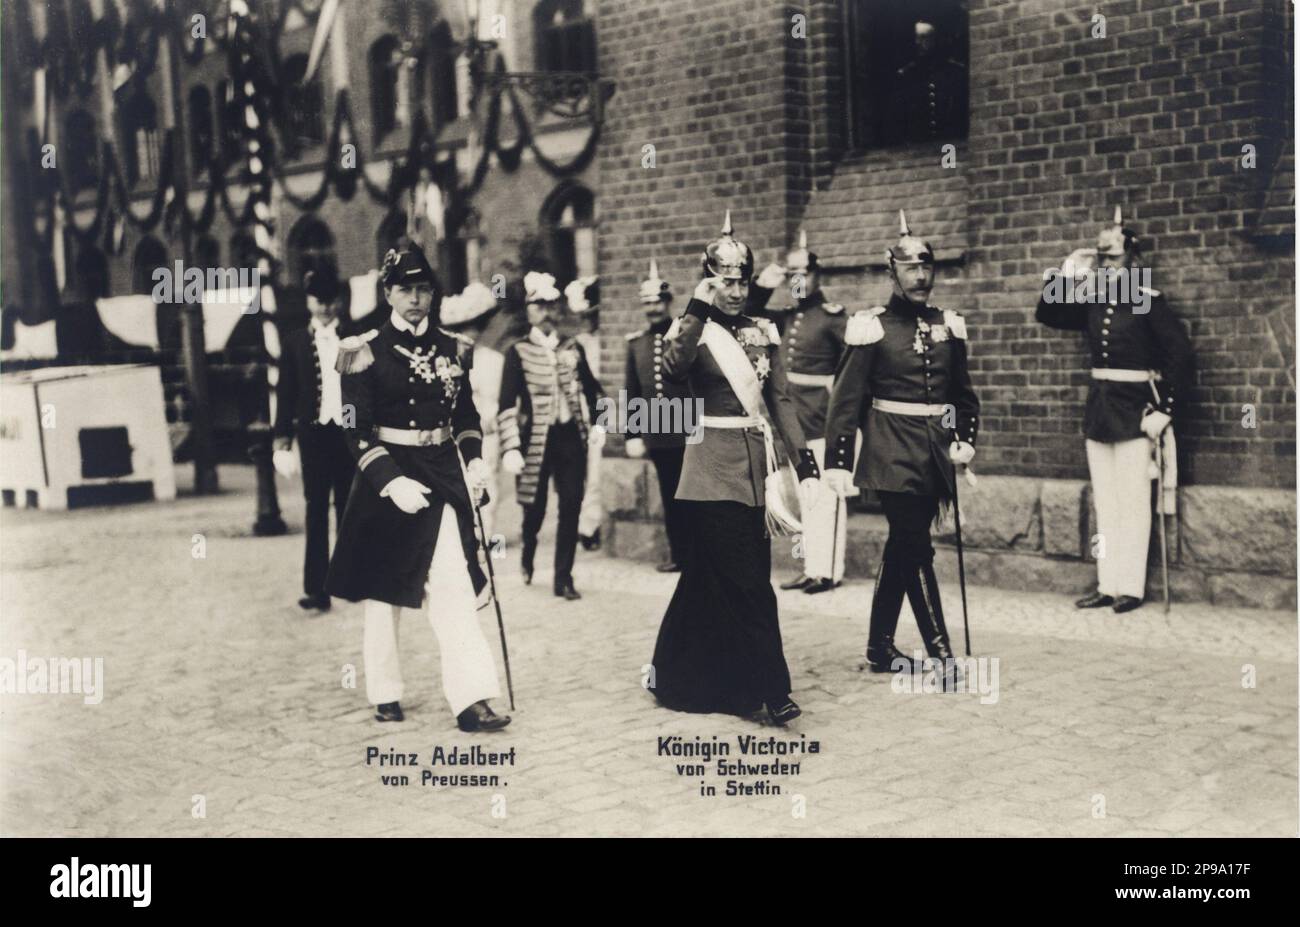 1909 , Berlino , Germania : Regina VITTORIA di SVEZIA (1862 - 1930 ), principessa di BADEN , sposata con il re GUSTAF V di SVEZIA BERNADOTTE (1858 - 1950 ), In questa foto in uniforme del Capitano del reggimento dei Fusilier Pomerani con il principe ADALBERTO di PRUSSIA in uniforme marina , figlio di Kaiser Willhelm II di Germania . Suo padre era il Granduca Federico i di Baden (figlio della Principessa Sophie di Svezia) e la Principessa Louise di Prussia (figlia unica di Guglielmo i di Germania e Augusta di Saxe-Weimar). Foto di T.H. Shumann e Sohn - REGINA - RE - NOBILTÀ - Nobiltà - REALI - REGALITÀ - ritratto Foto Stock